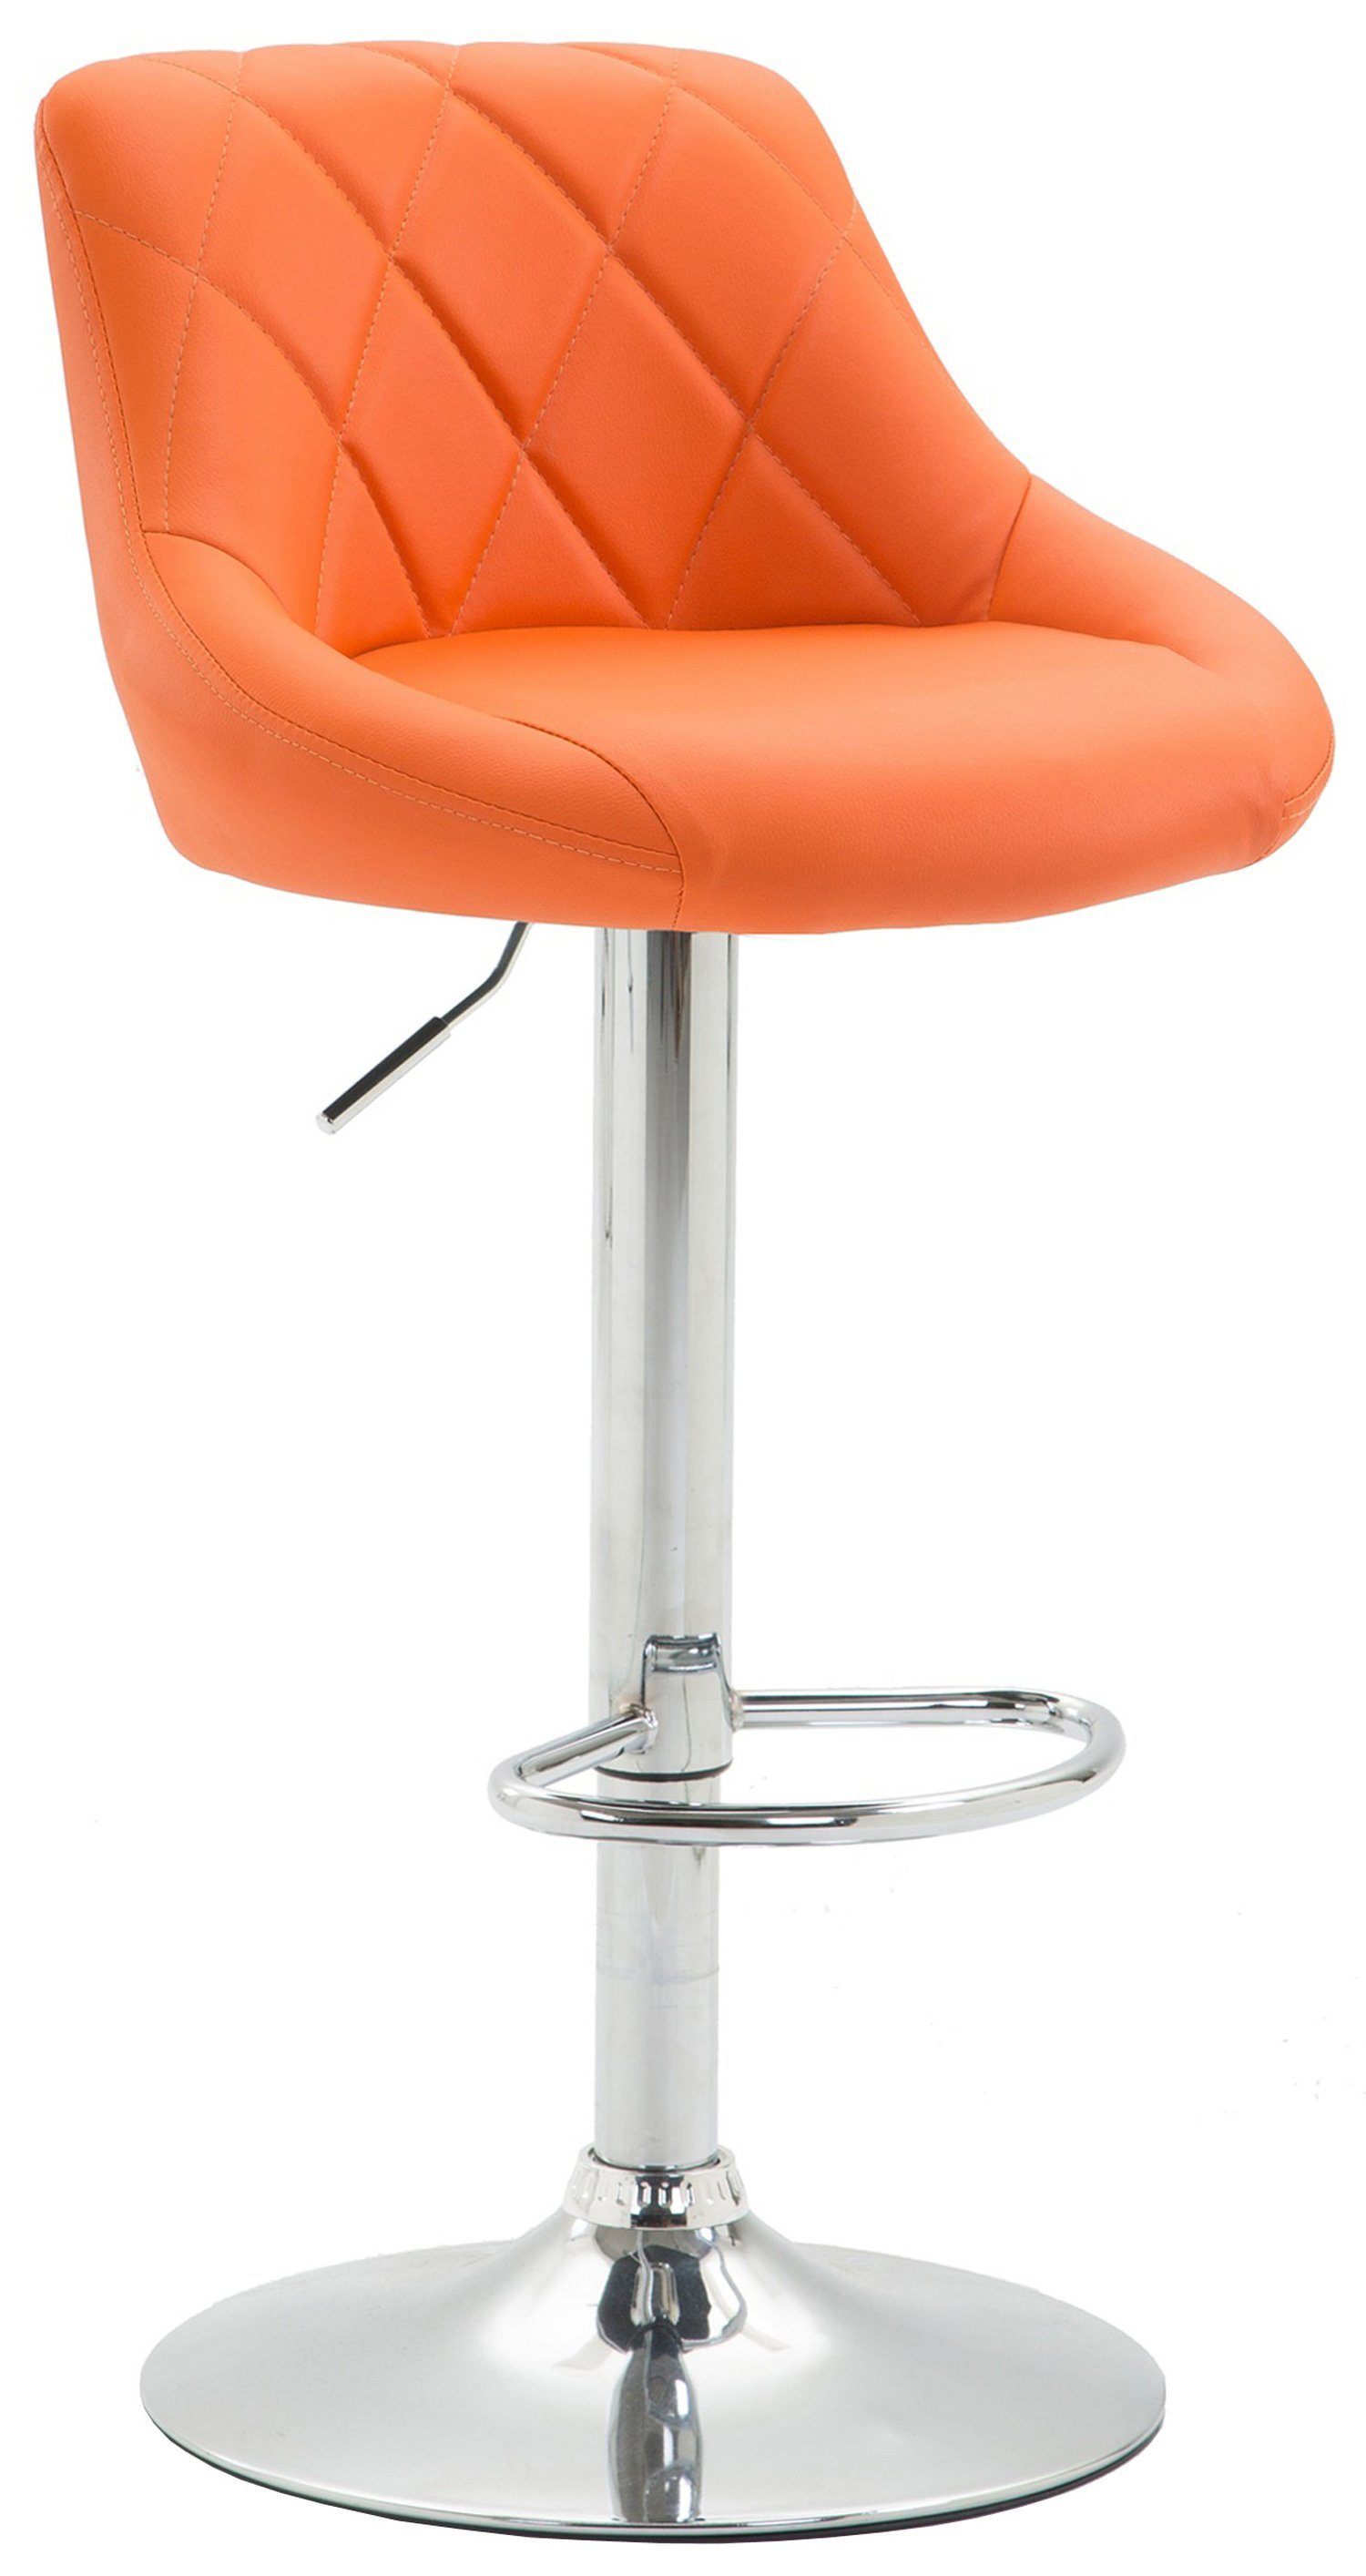 TPFLiving Barhocker Lazius, mit Rückenlehne und Fußstütze - Barstuhl höhenverstellbar - Hocker für Theke & Küche - Tresenhocker 360° drehbar - verchromter Stahl - Sitzfläche: Kunstleder Orange